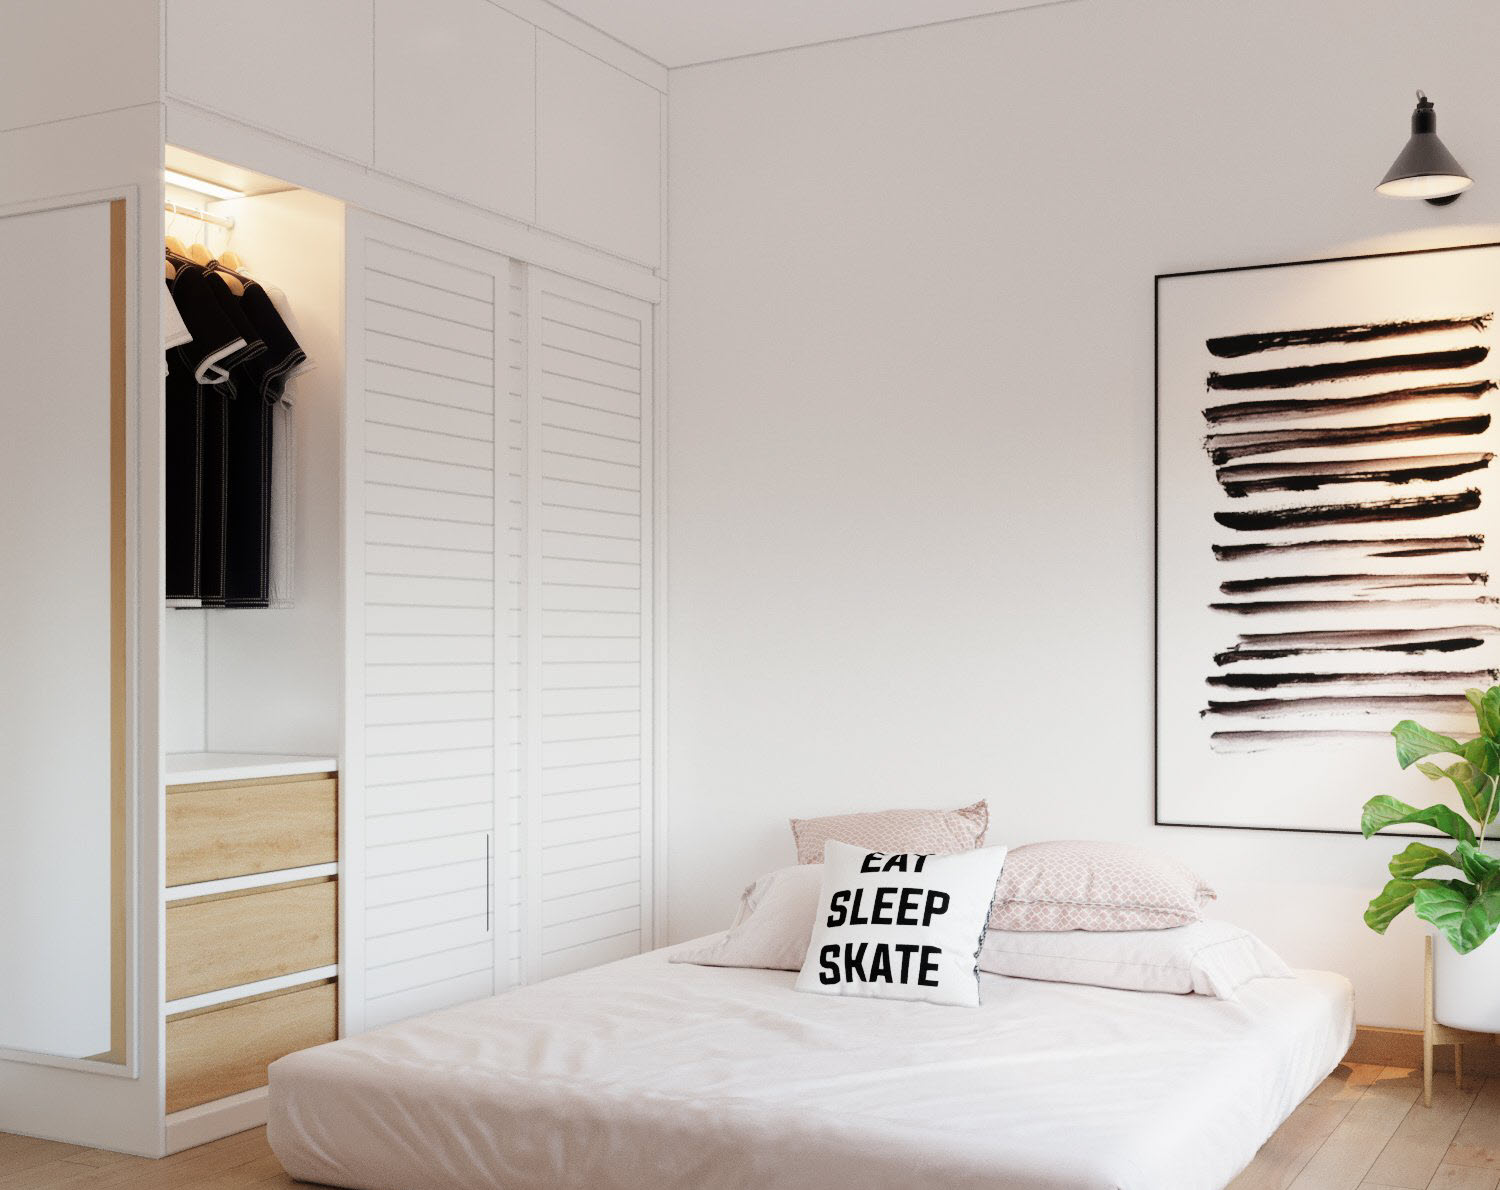 Phòng ngủ thứ hai sử dụng bảng màu trắng chủ đạo kết hợp cùng nội thất gỗ tạo điểm nhấn ấm áp